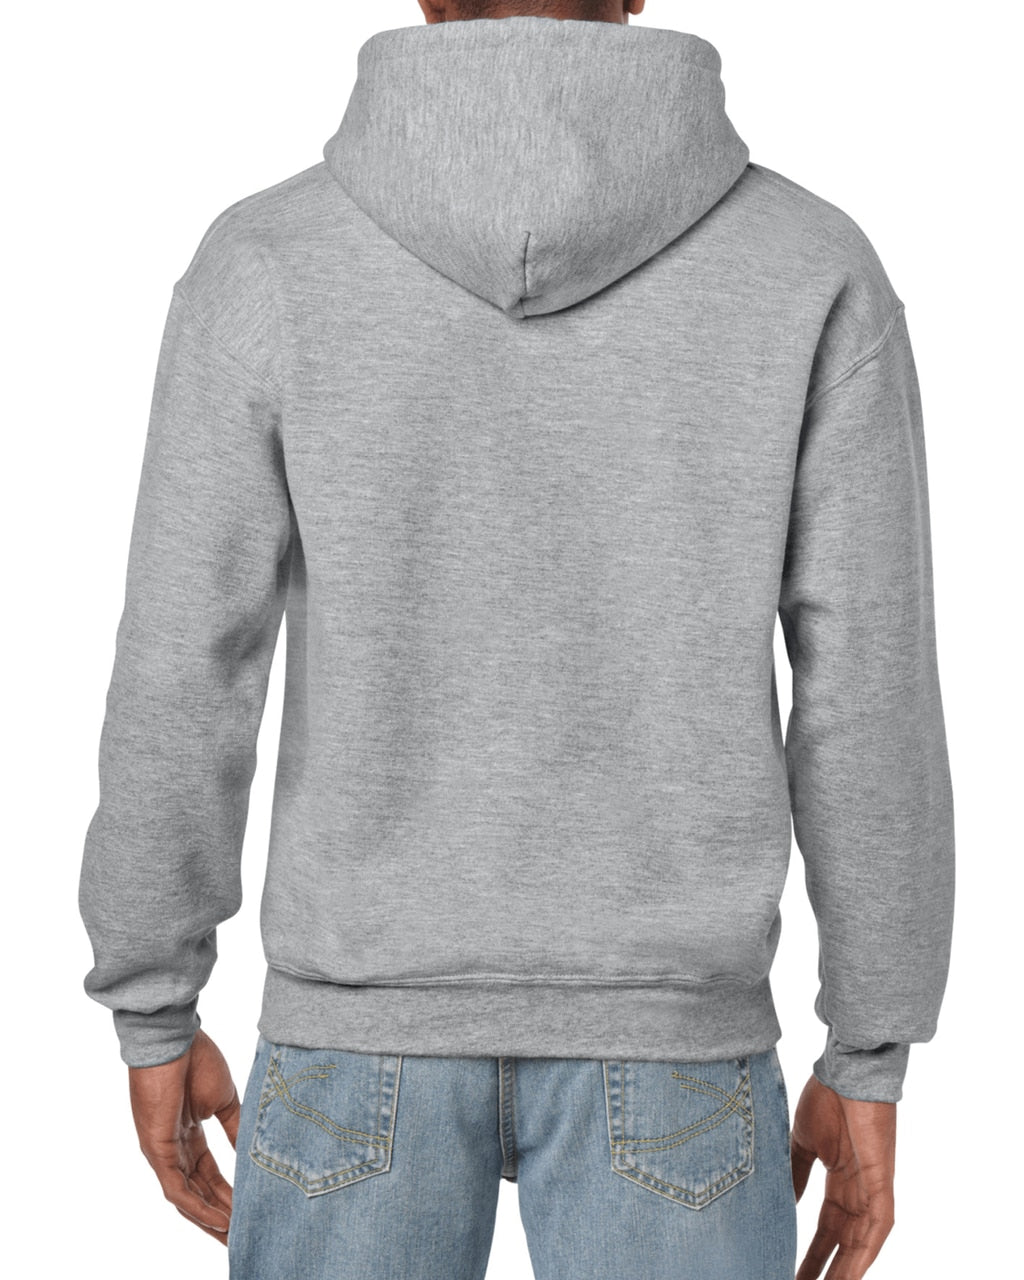 Men's Solid Color Hooded Sweatshirt